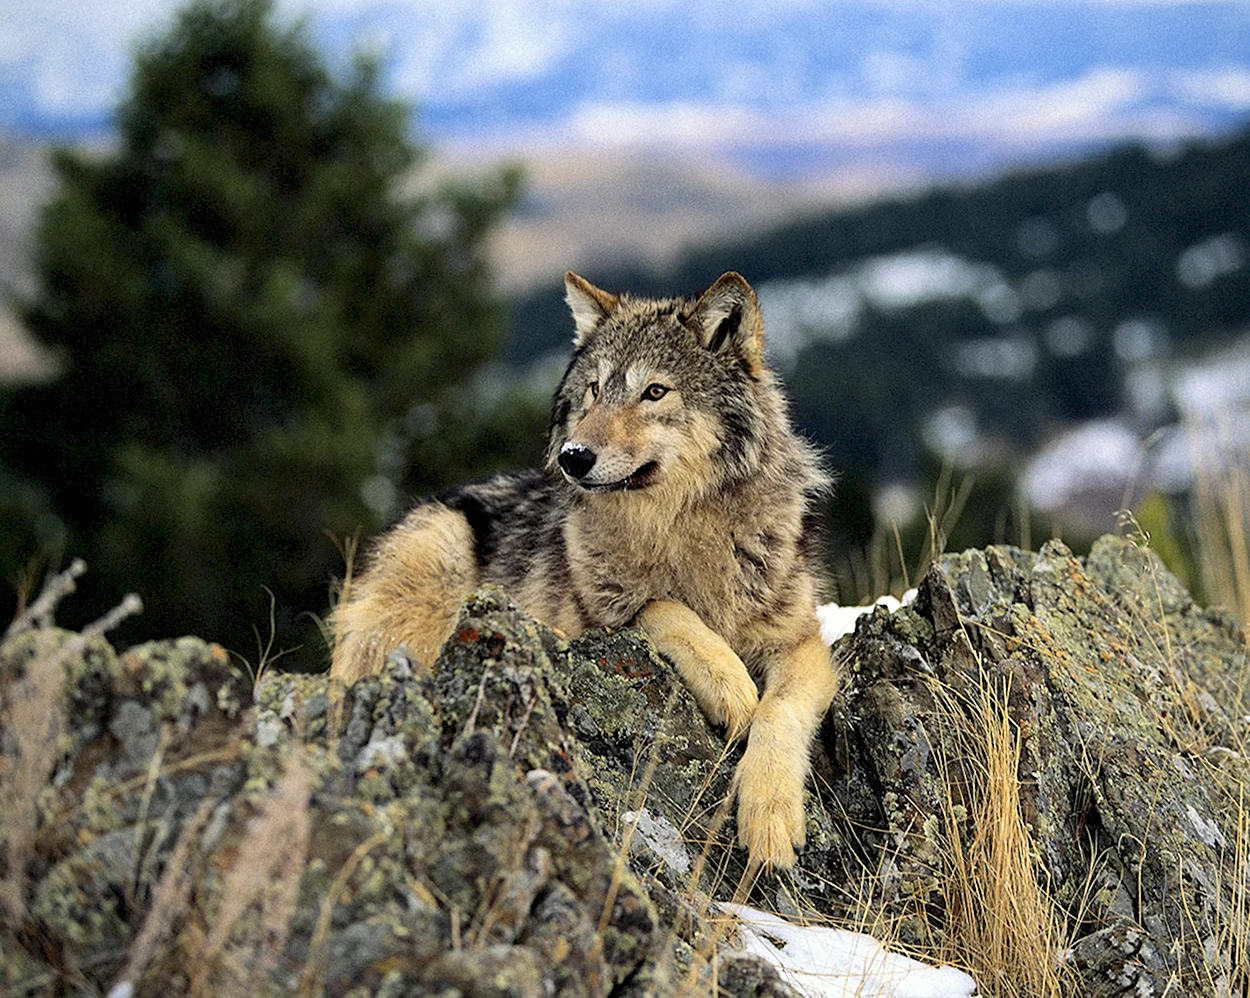 Волк скалистых гор. Красивое животное